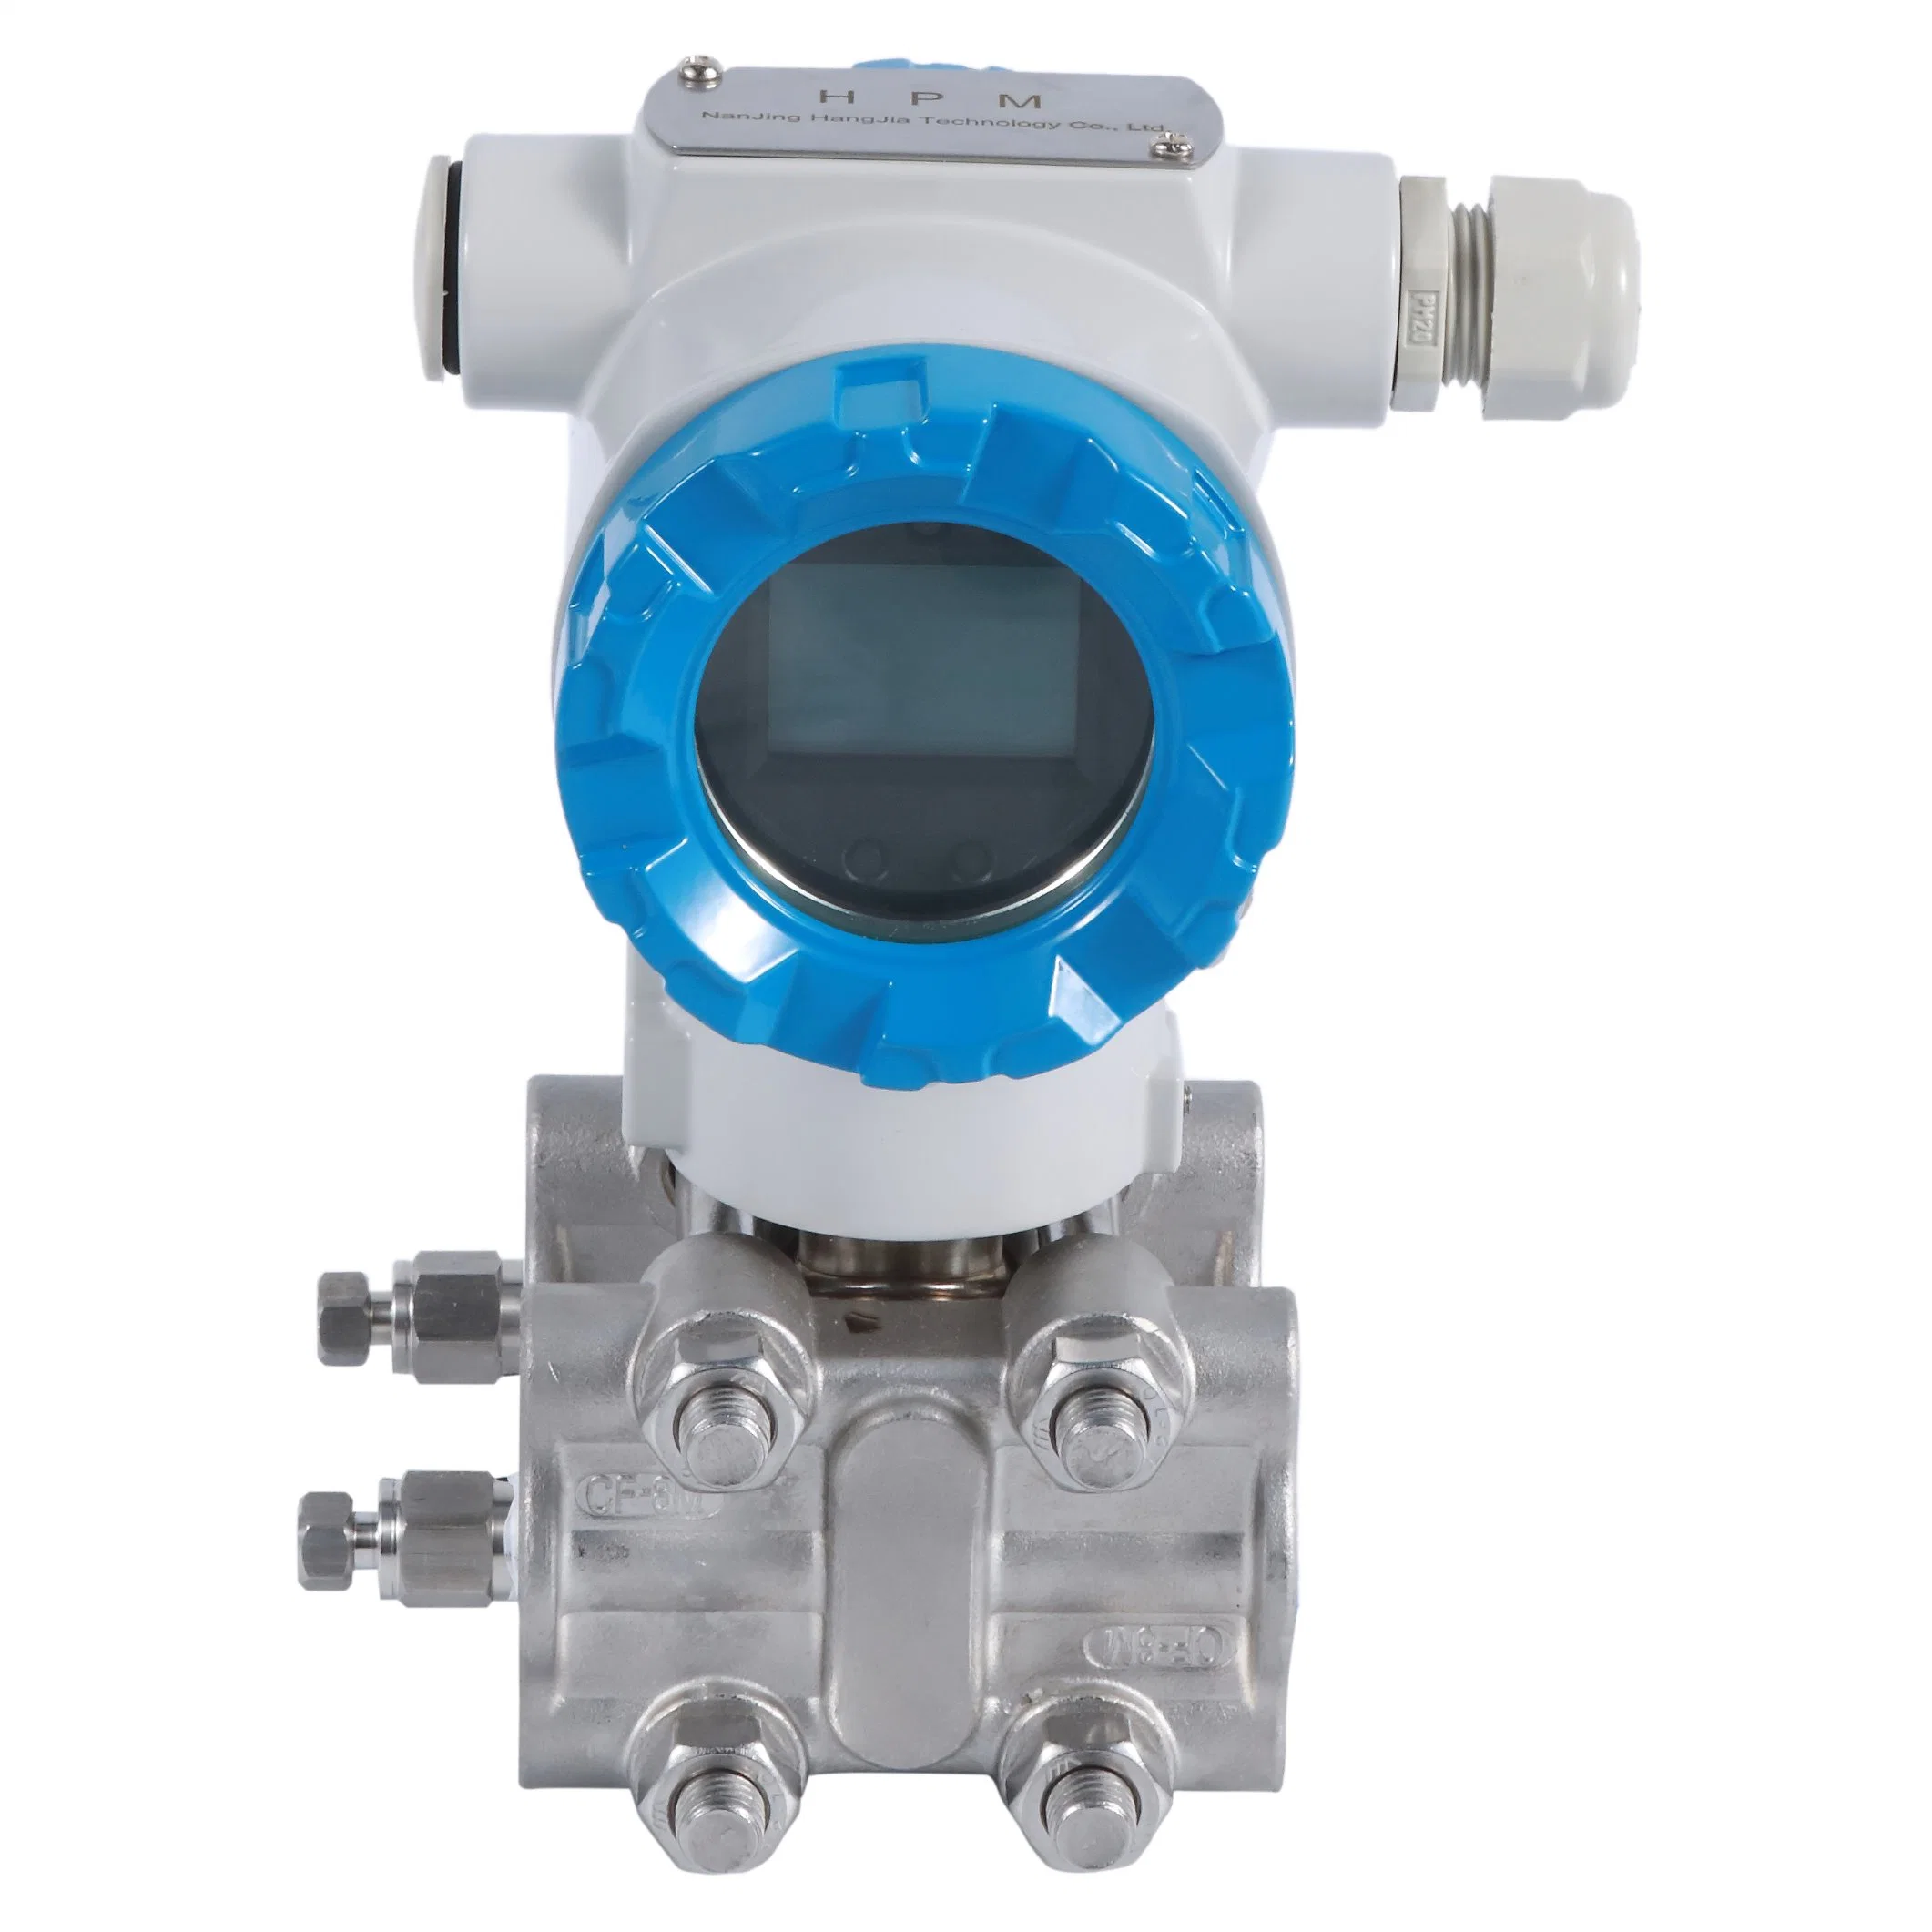 Display digital de alta precisión del sensor de presión diferencial de 4-20 mA